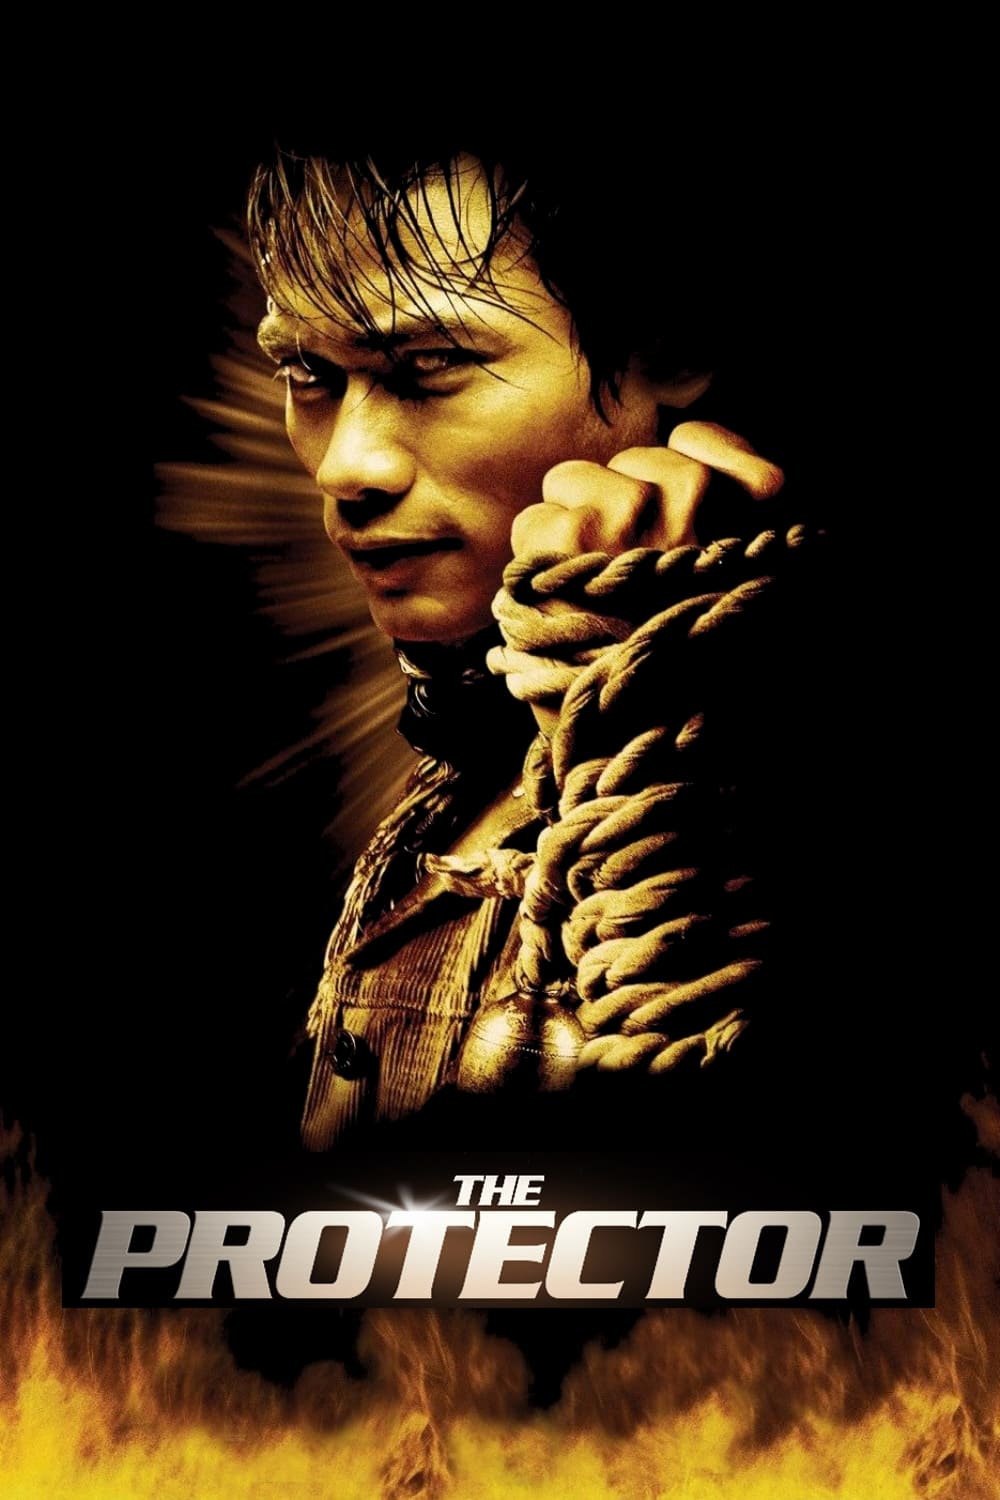 O Protetor (2005)